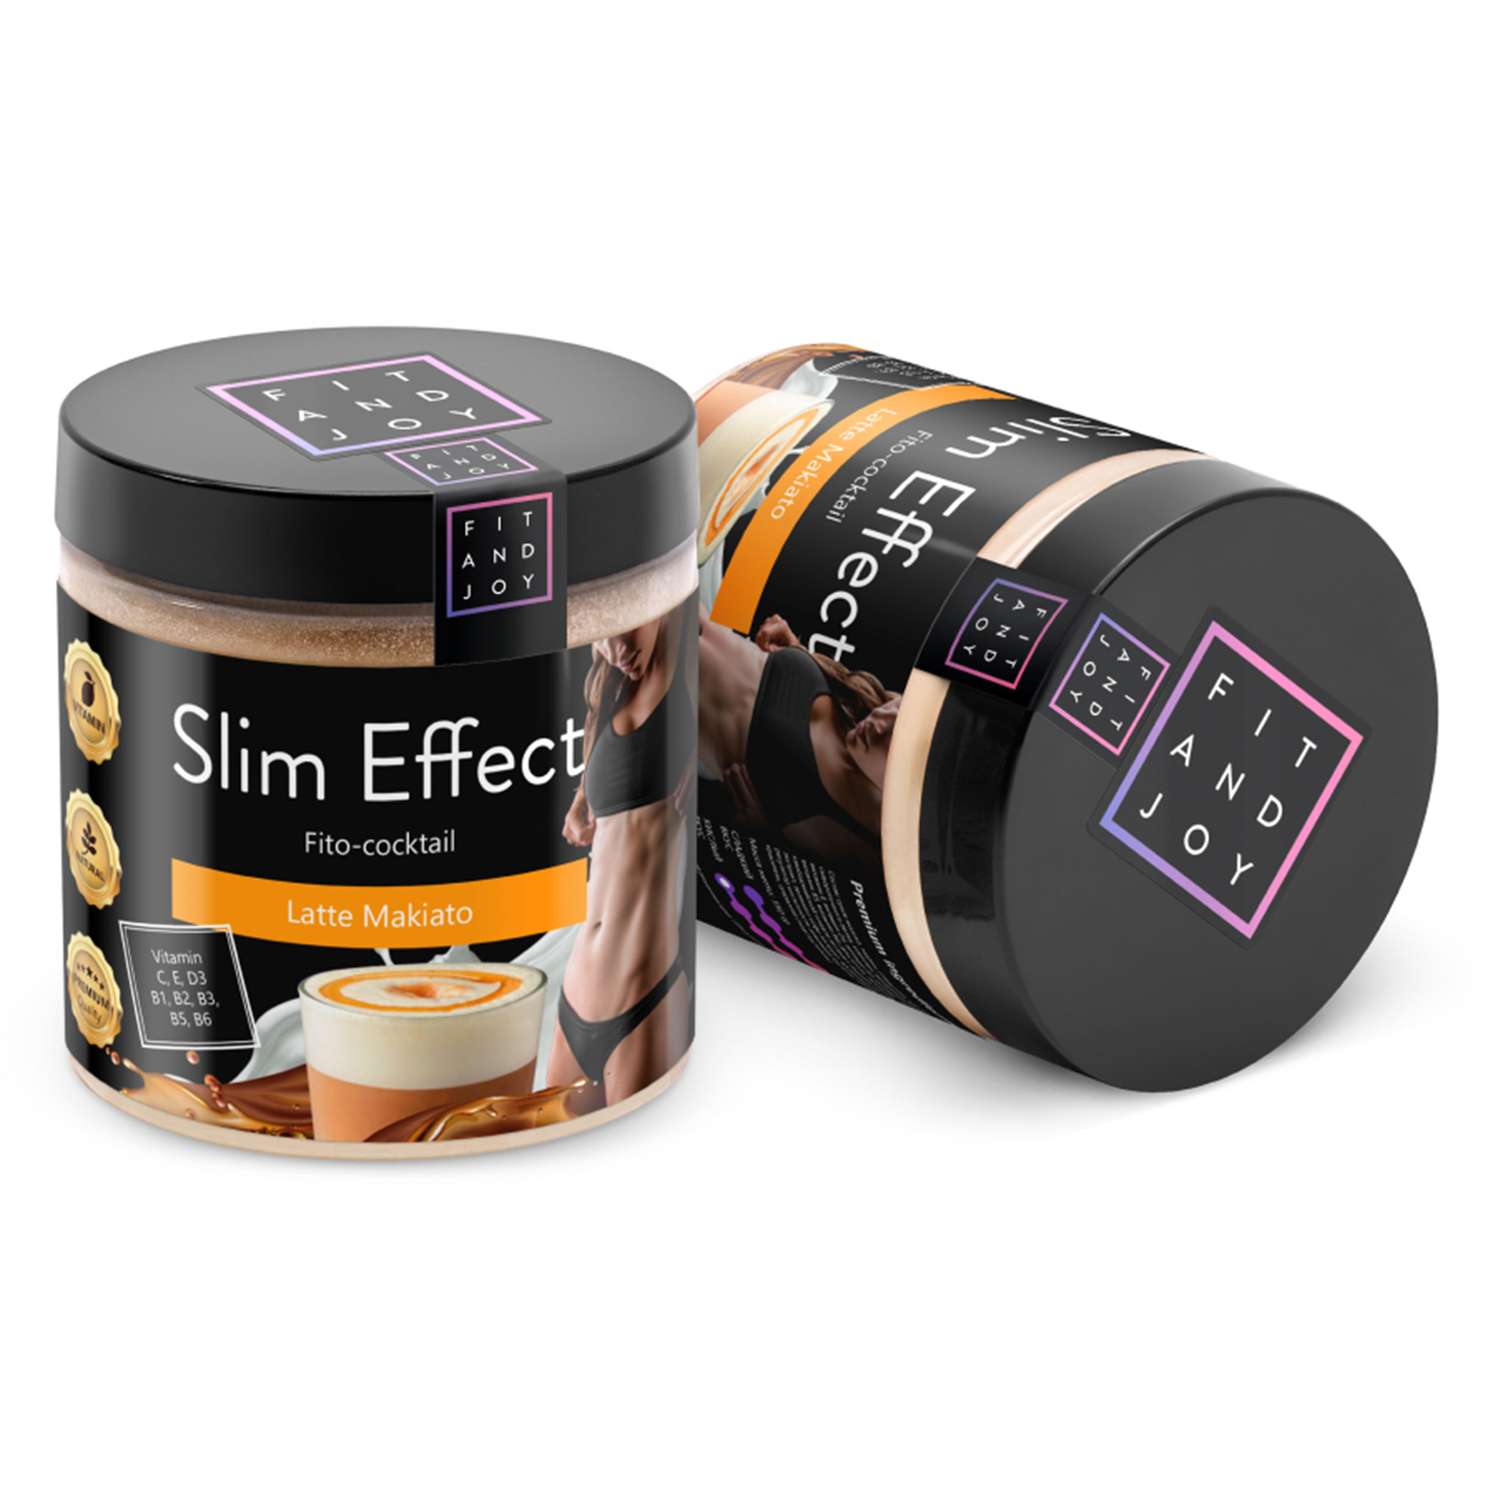 Фитококтейль FIT AND JOY Slim Effect для похудения - фото 8